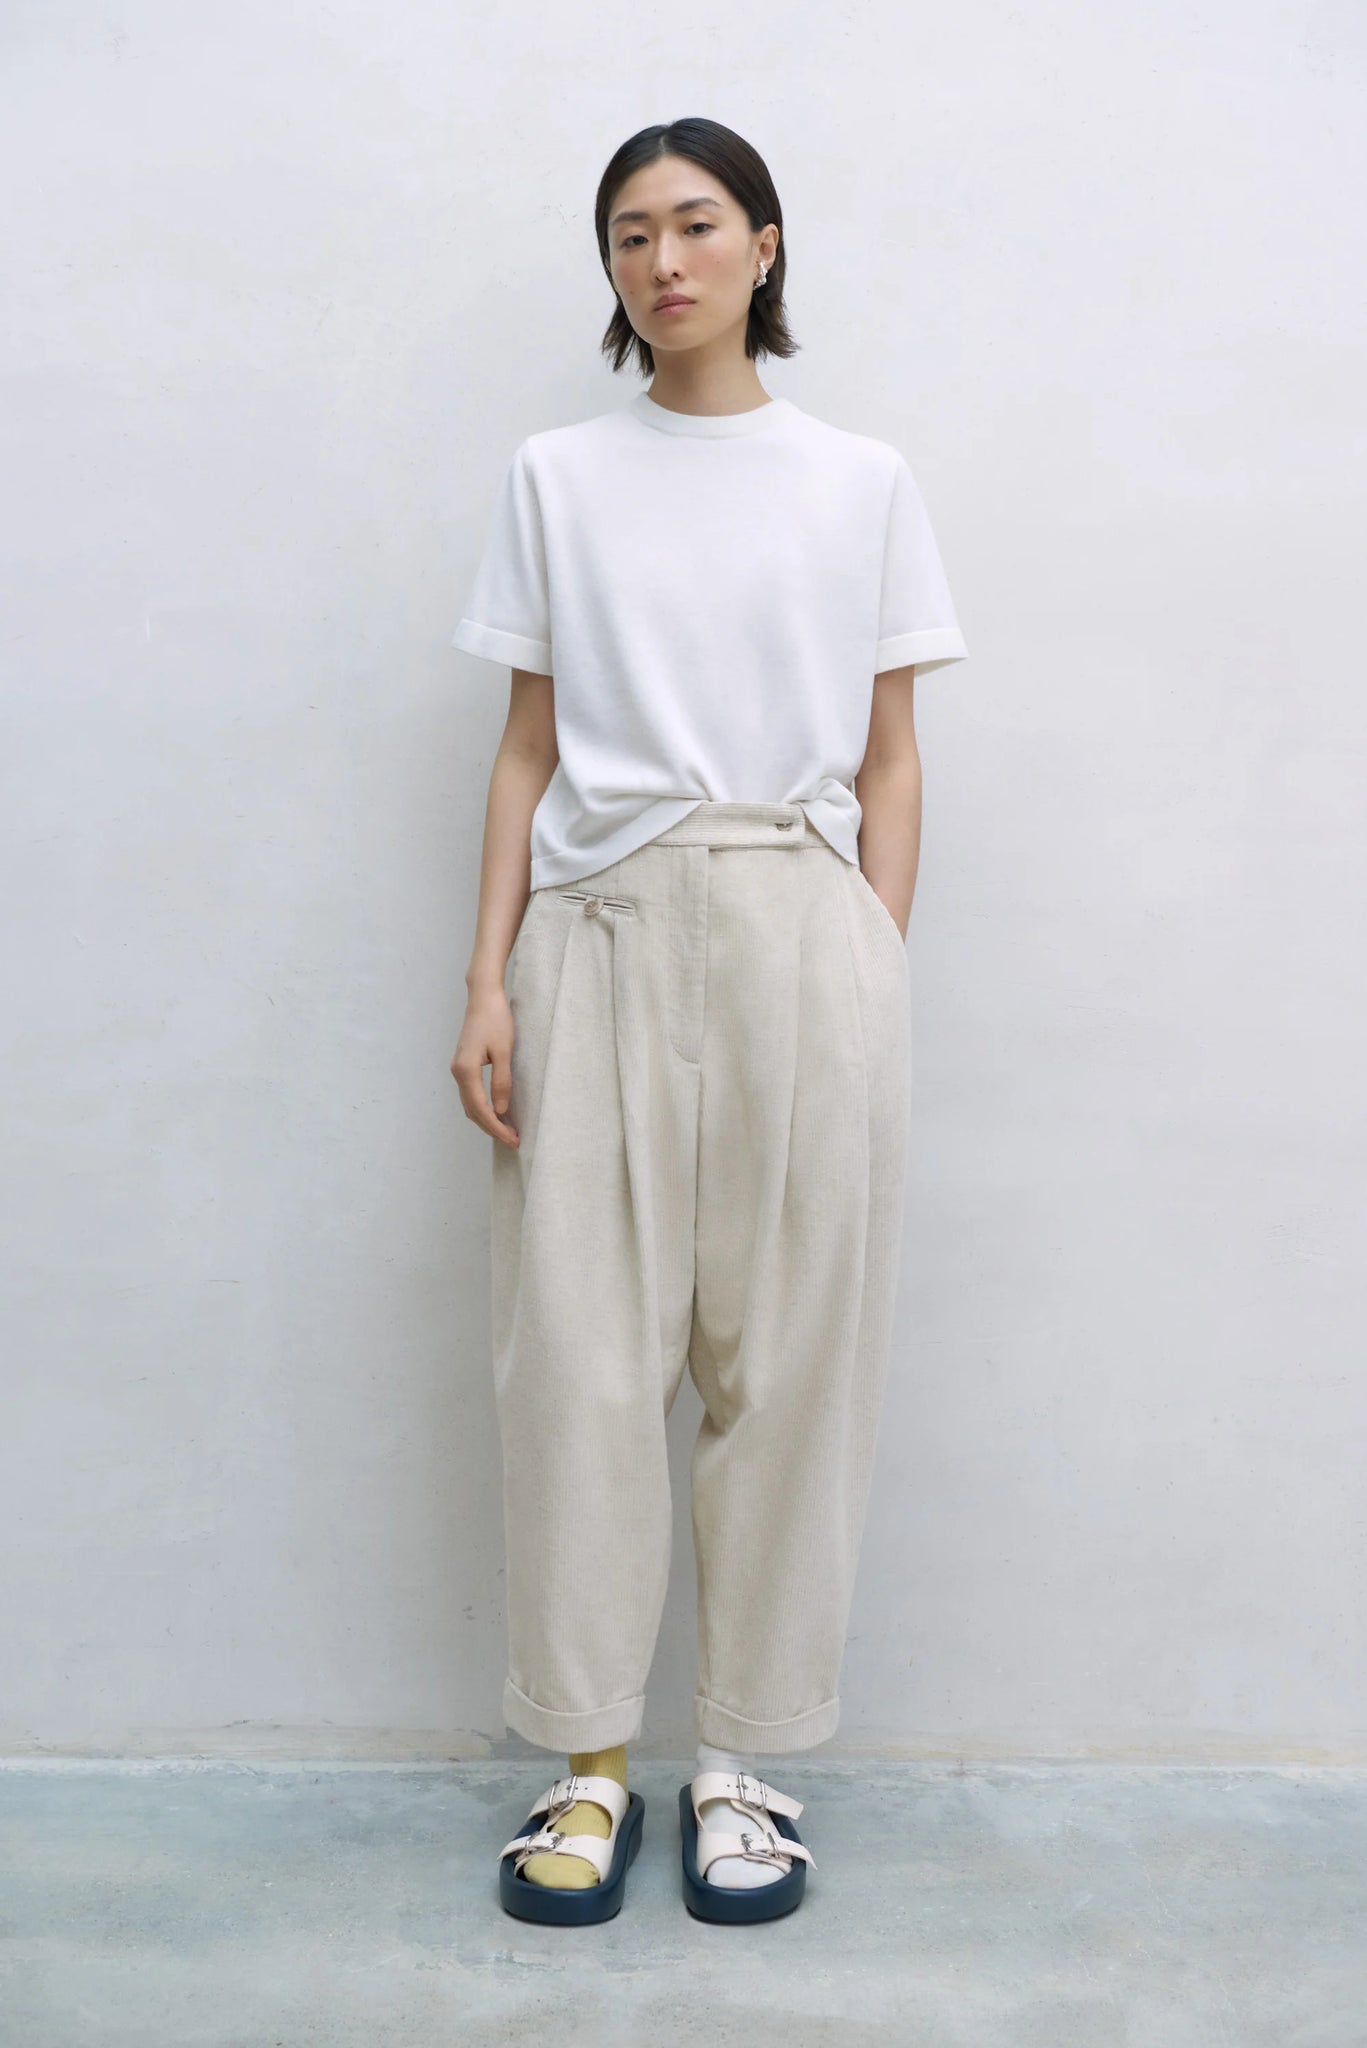 Merino Wool T-shirt // White